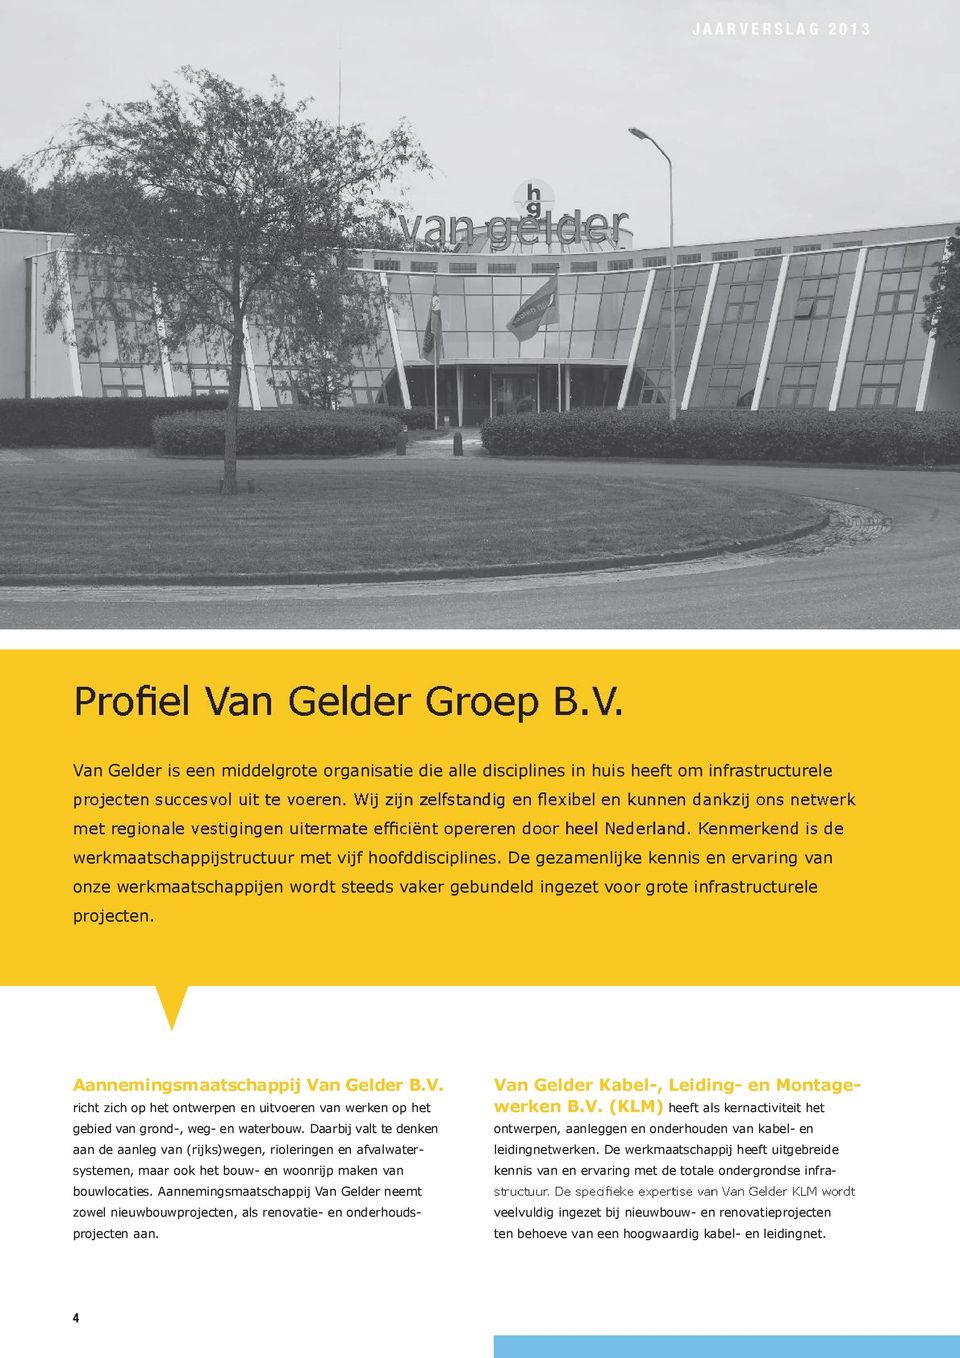 n Gelder B.V. richt zich op het ontwerpen en uitvoeren van werken op het gebied van grond-, weg- en waterbouw.